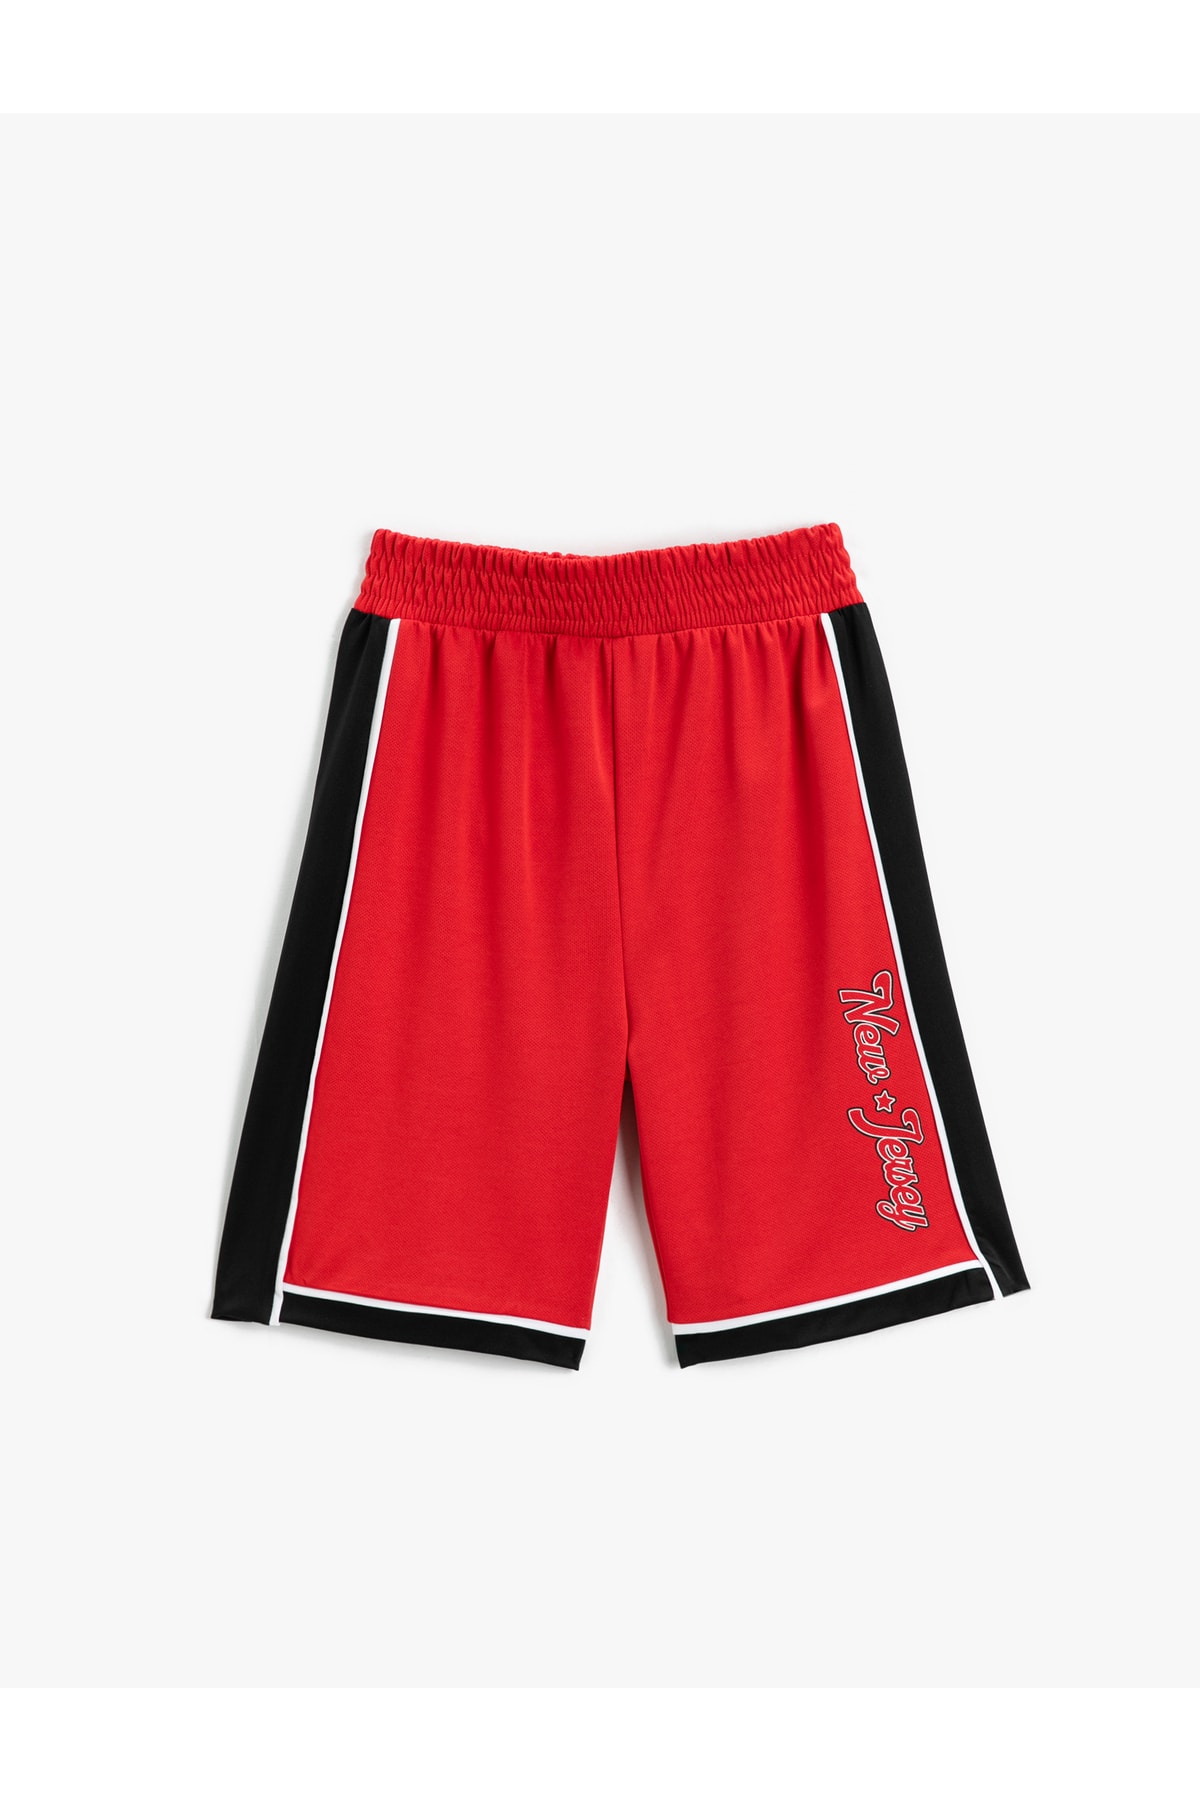 Koton Color Blocked Basketball Shorts